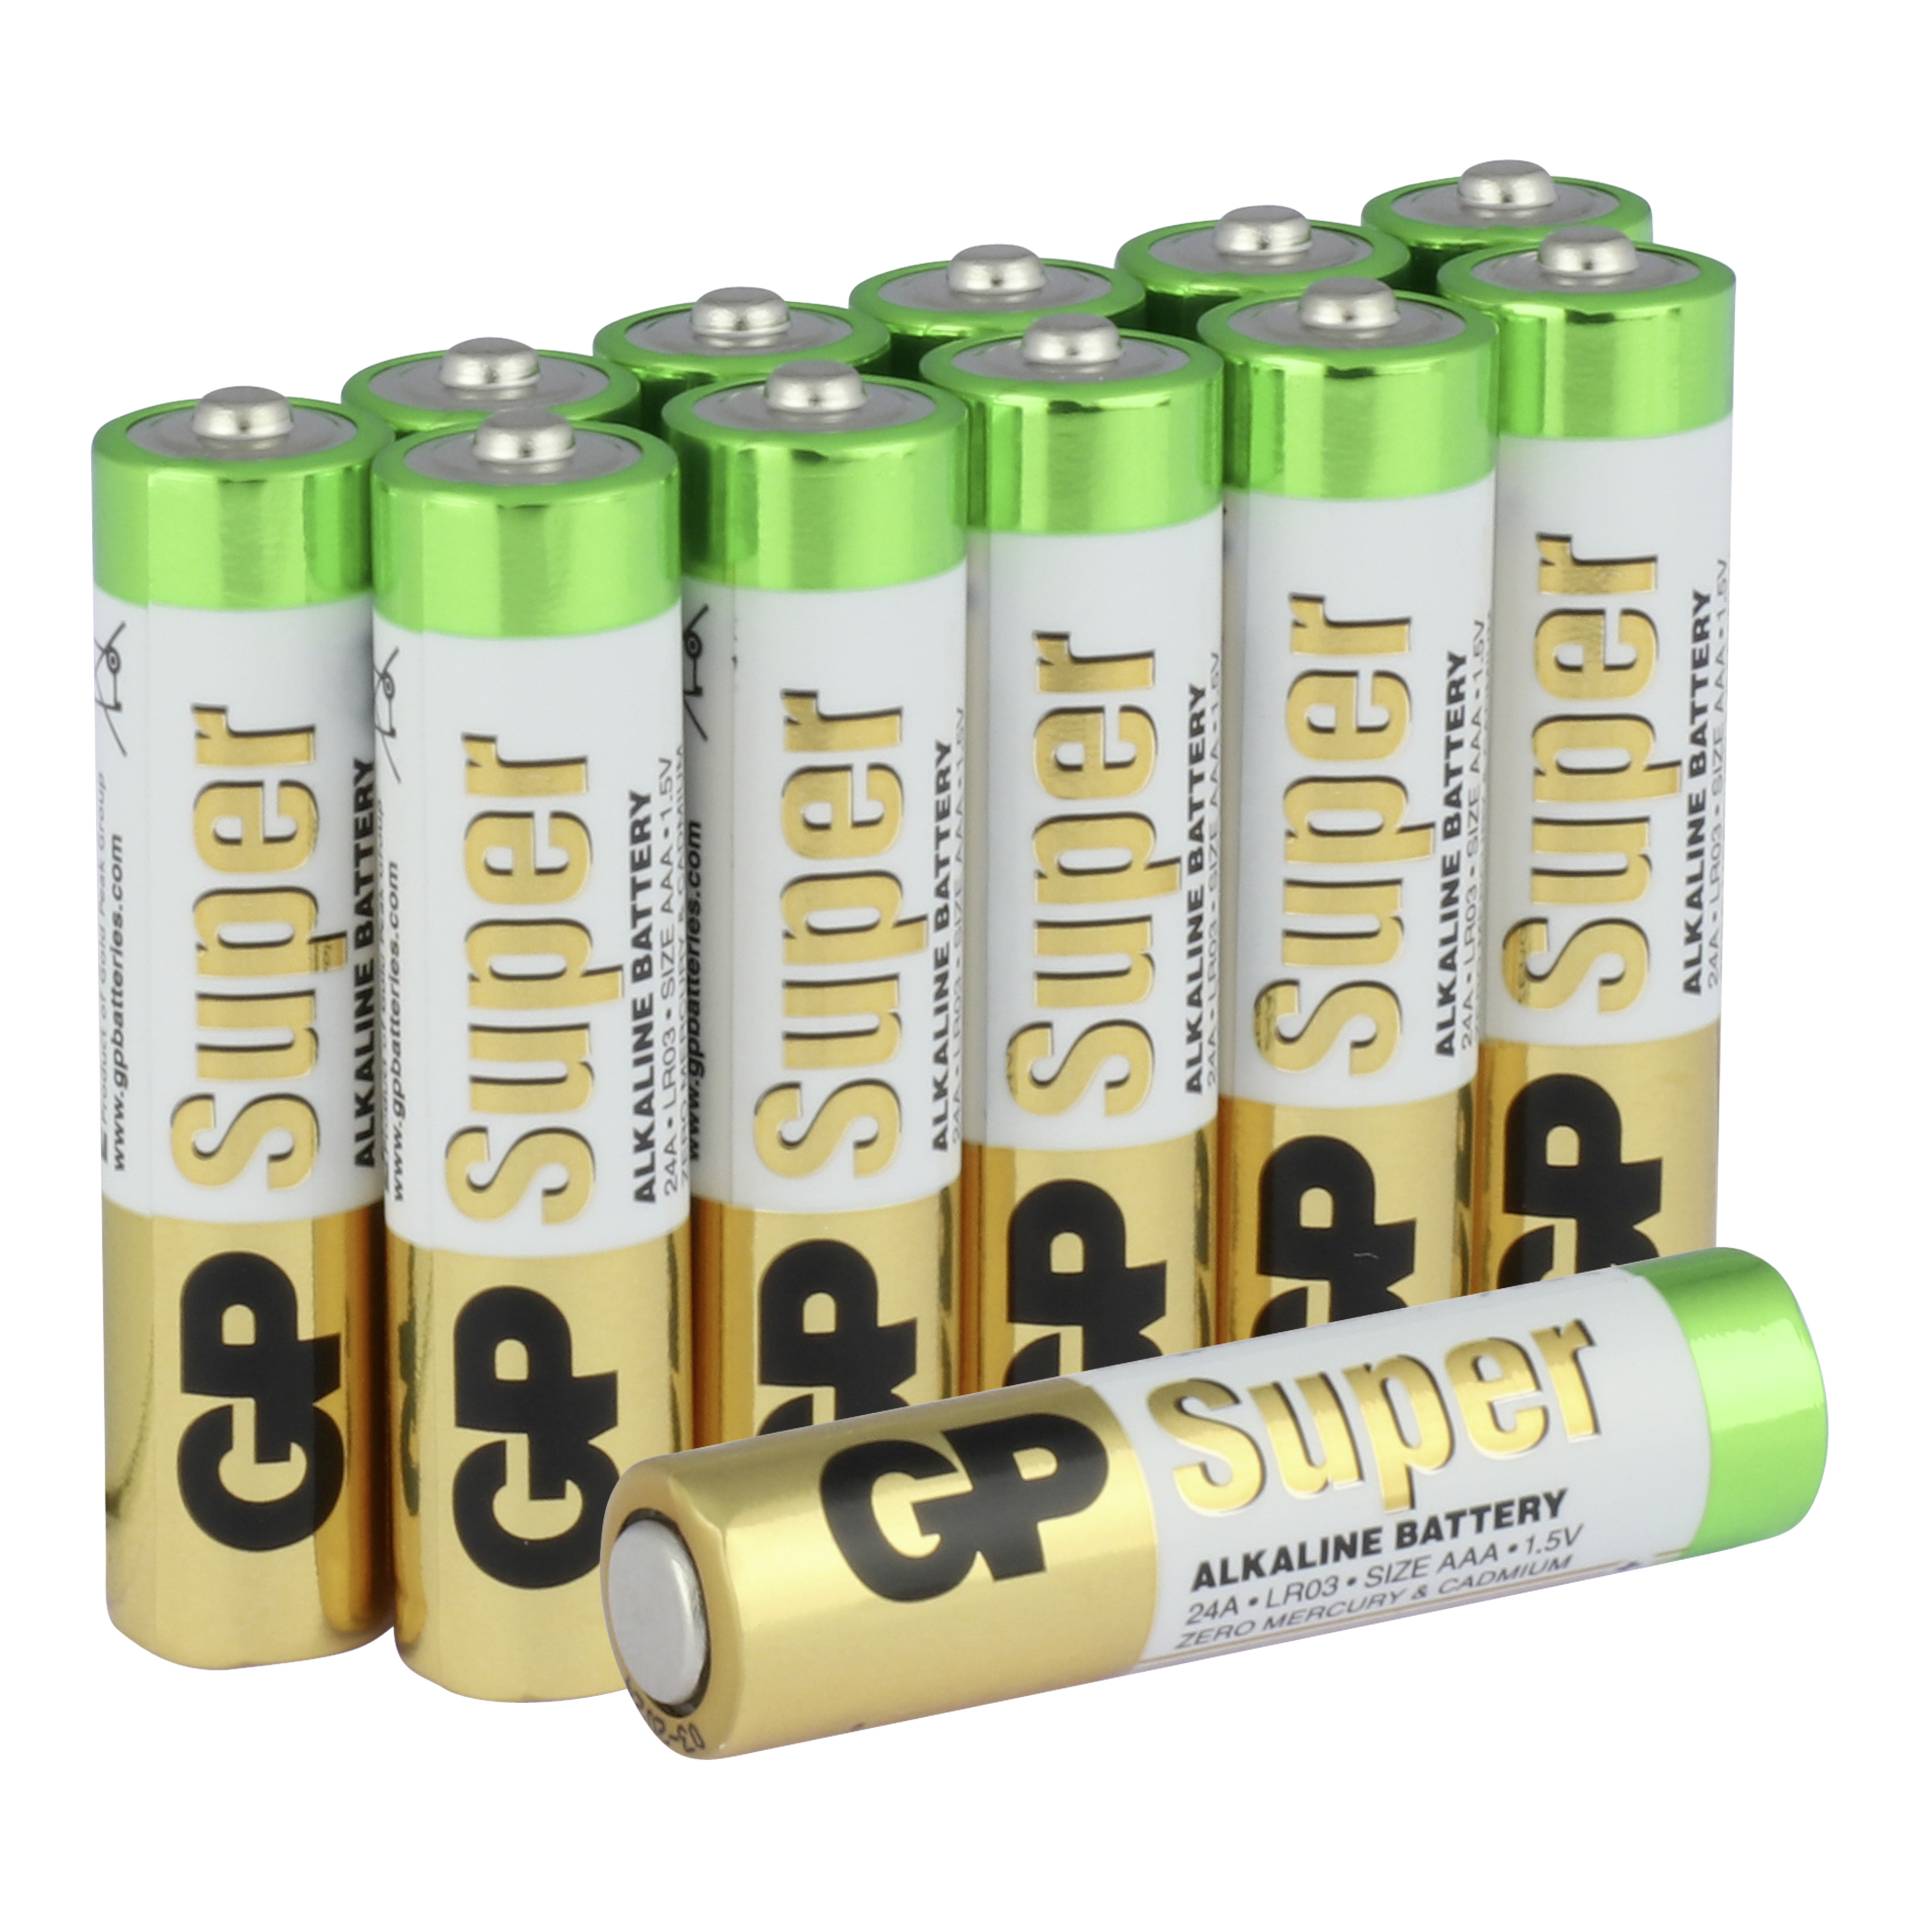 Super alkaline batteries. Батарейка GP super Alkaline AAA. AAA батарейка GP super Alkaline 24a lr03. Alkaline Battery 1.5v lr03. Батарейки GP super 3+1.